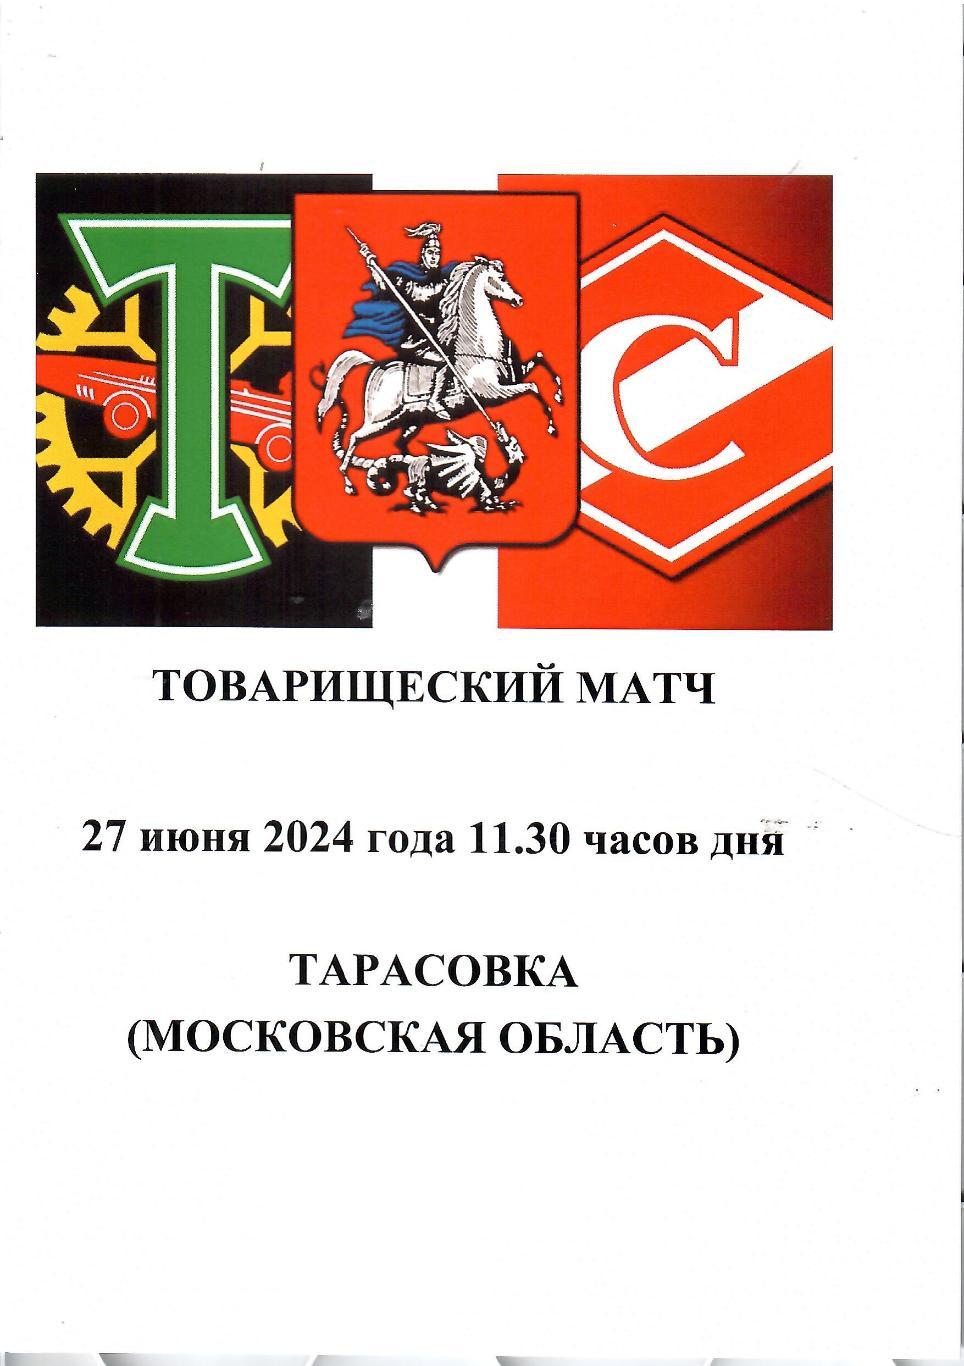 2024 Торпедо Москва - Спартак Москва ТМ